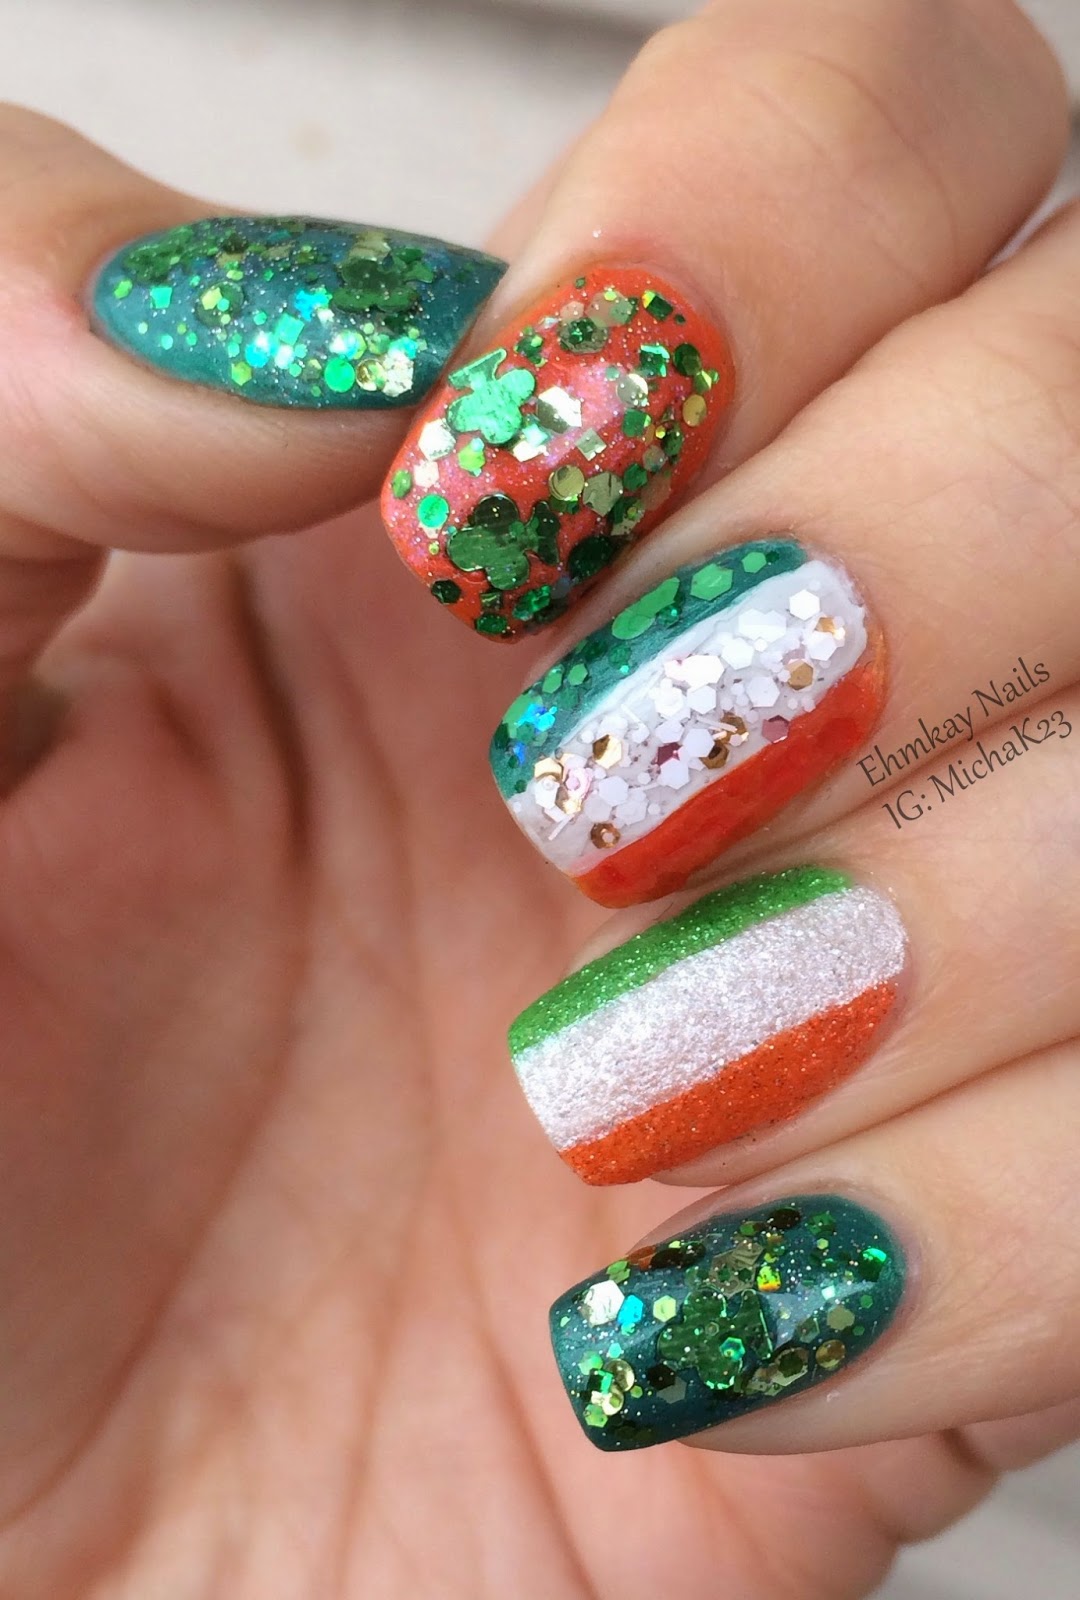 ehmkay nails: Happy St. Patrick's Day Nails! Ireland Flag and Shamrock ...